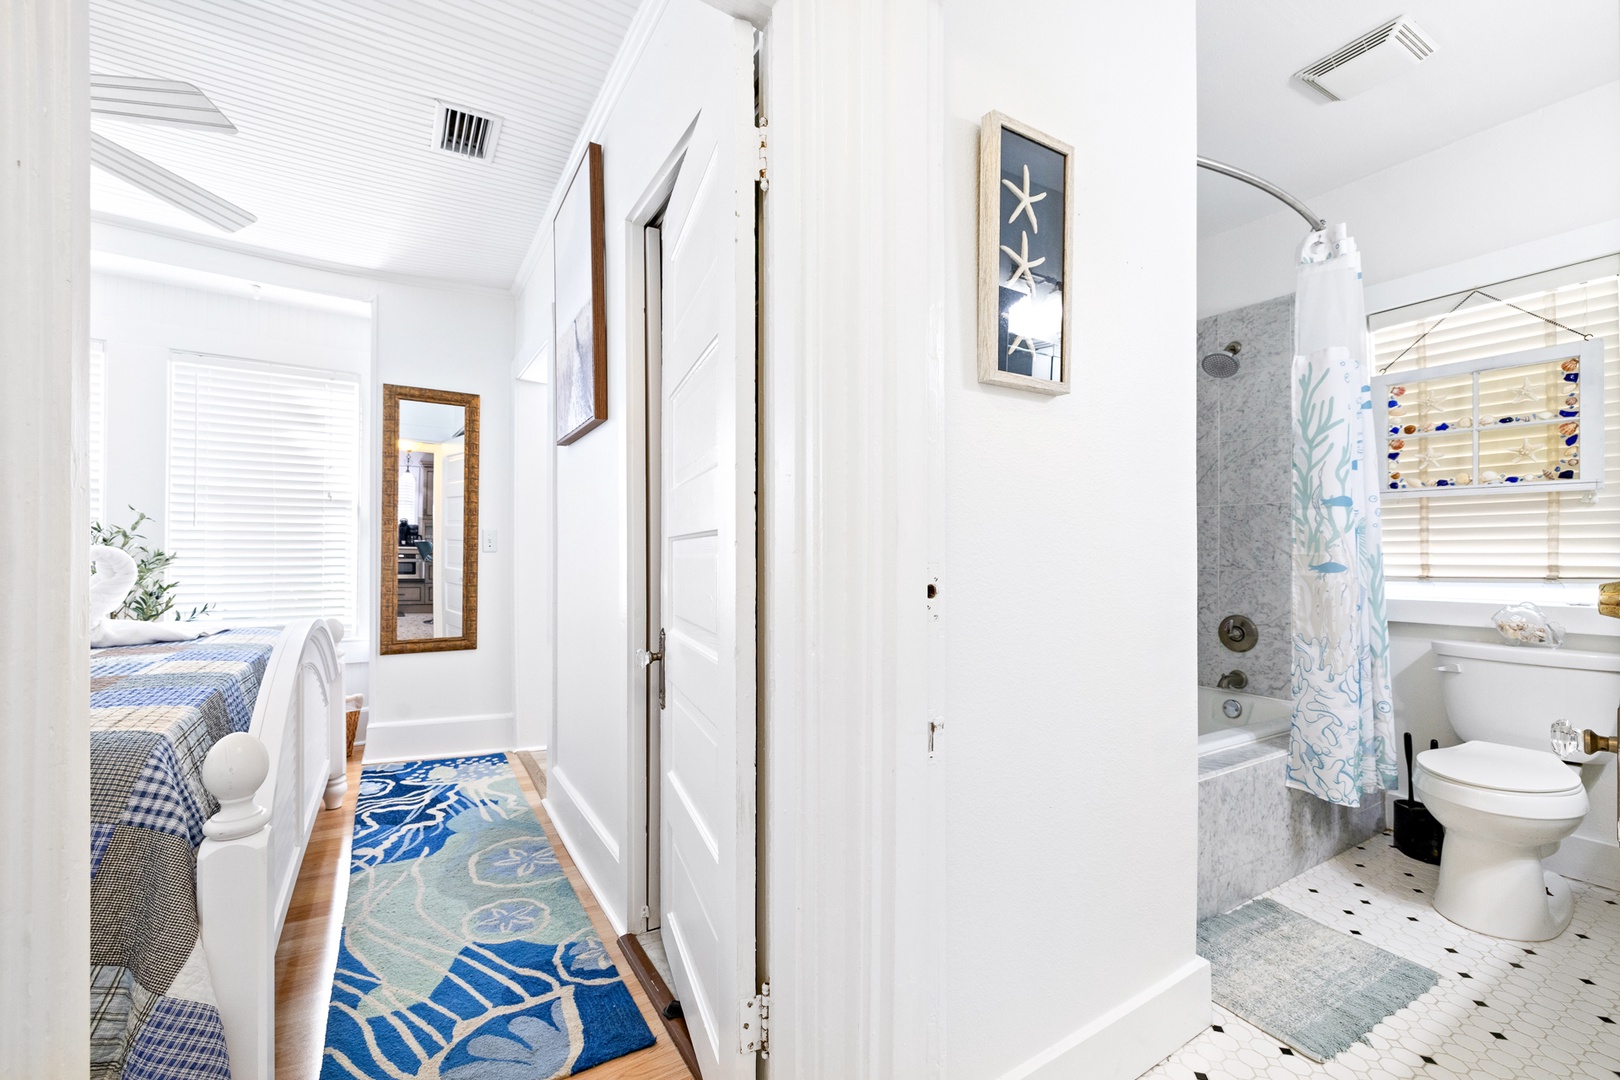 A spacious king bedroom & the home’s coastal full bath await on the 1st floor